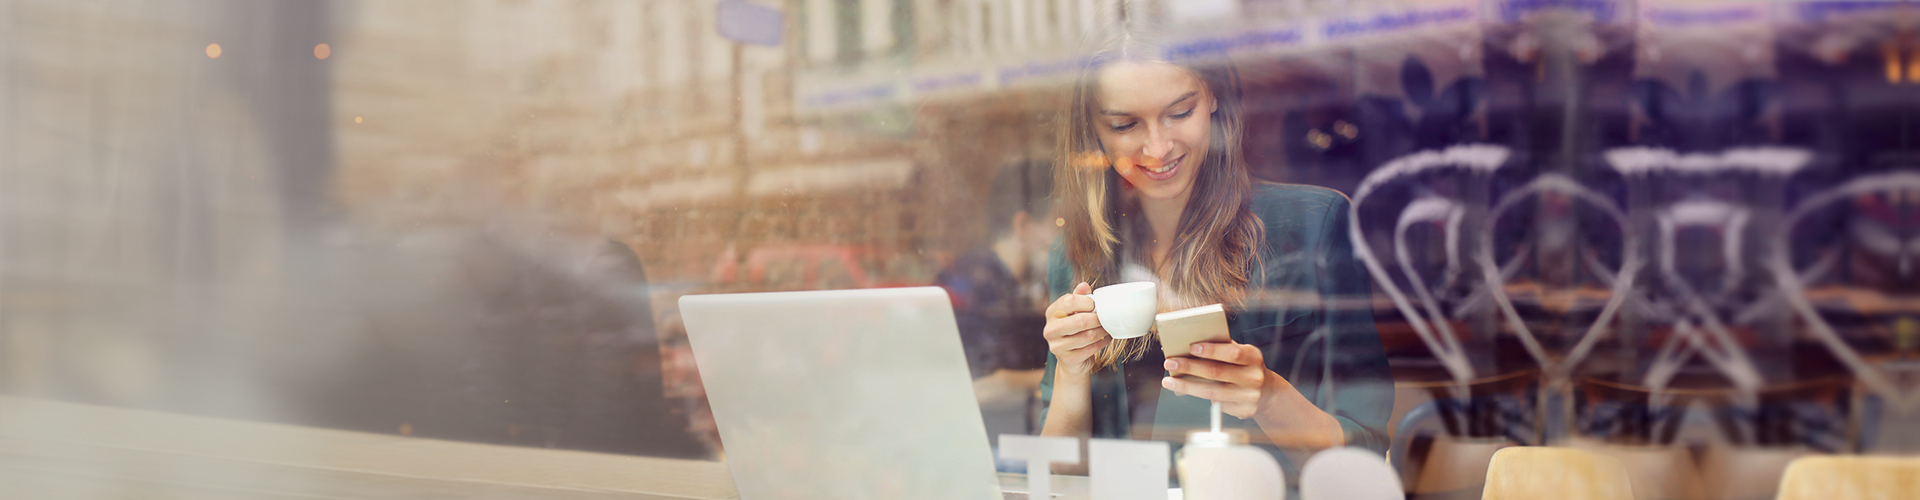 Uśmiechnięta kobieta korzysta z laptopa i smartfona w kawiarni, trzymając filiżankę